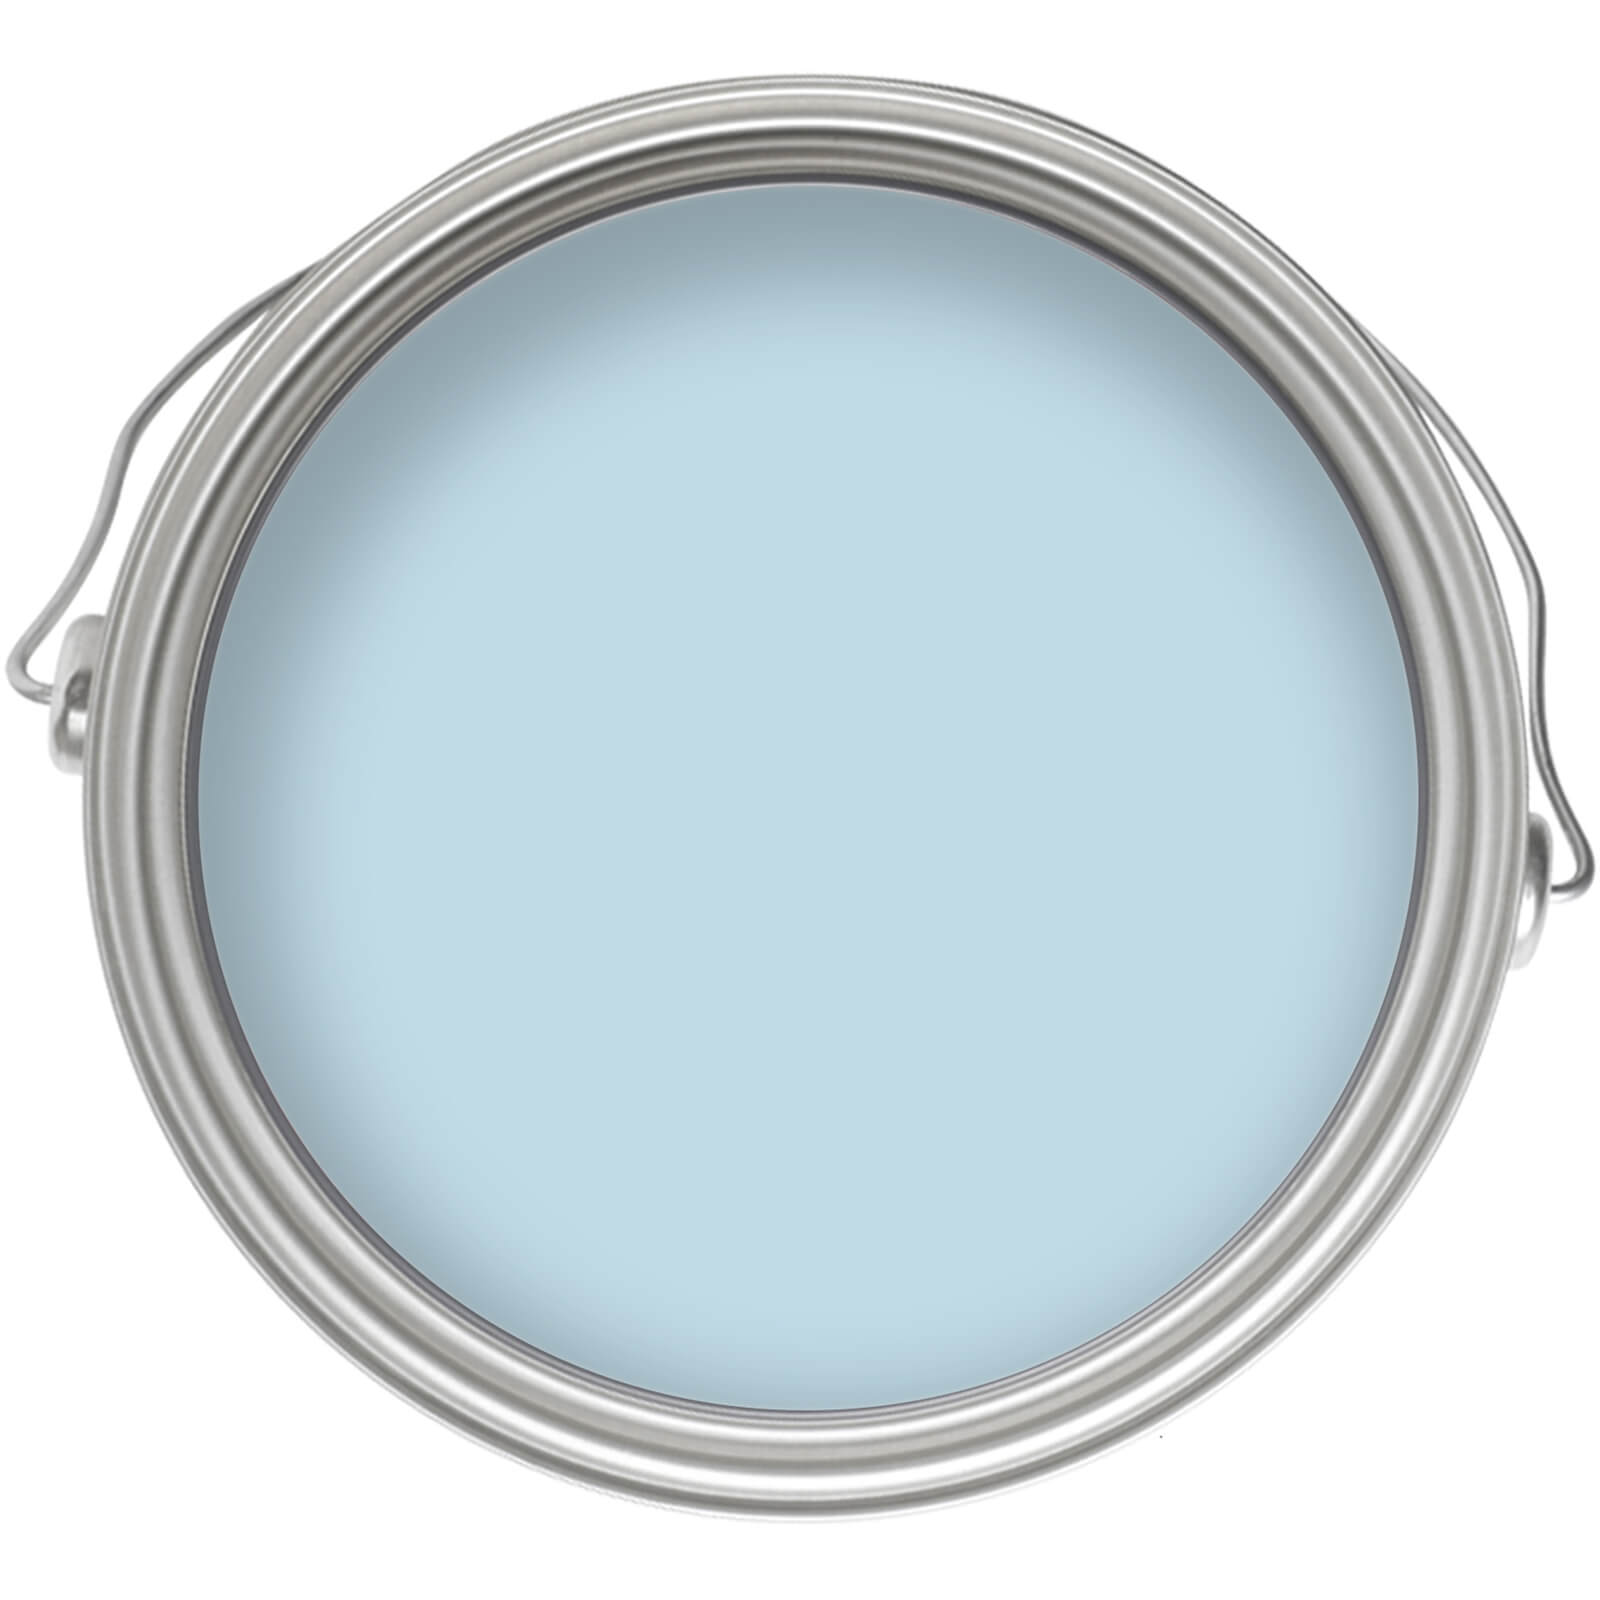 Homebase Tough & Durable Matt Emulsion Paint Blue Lace - 2.5L